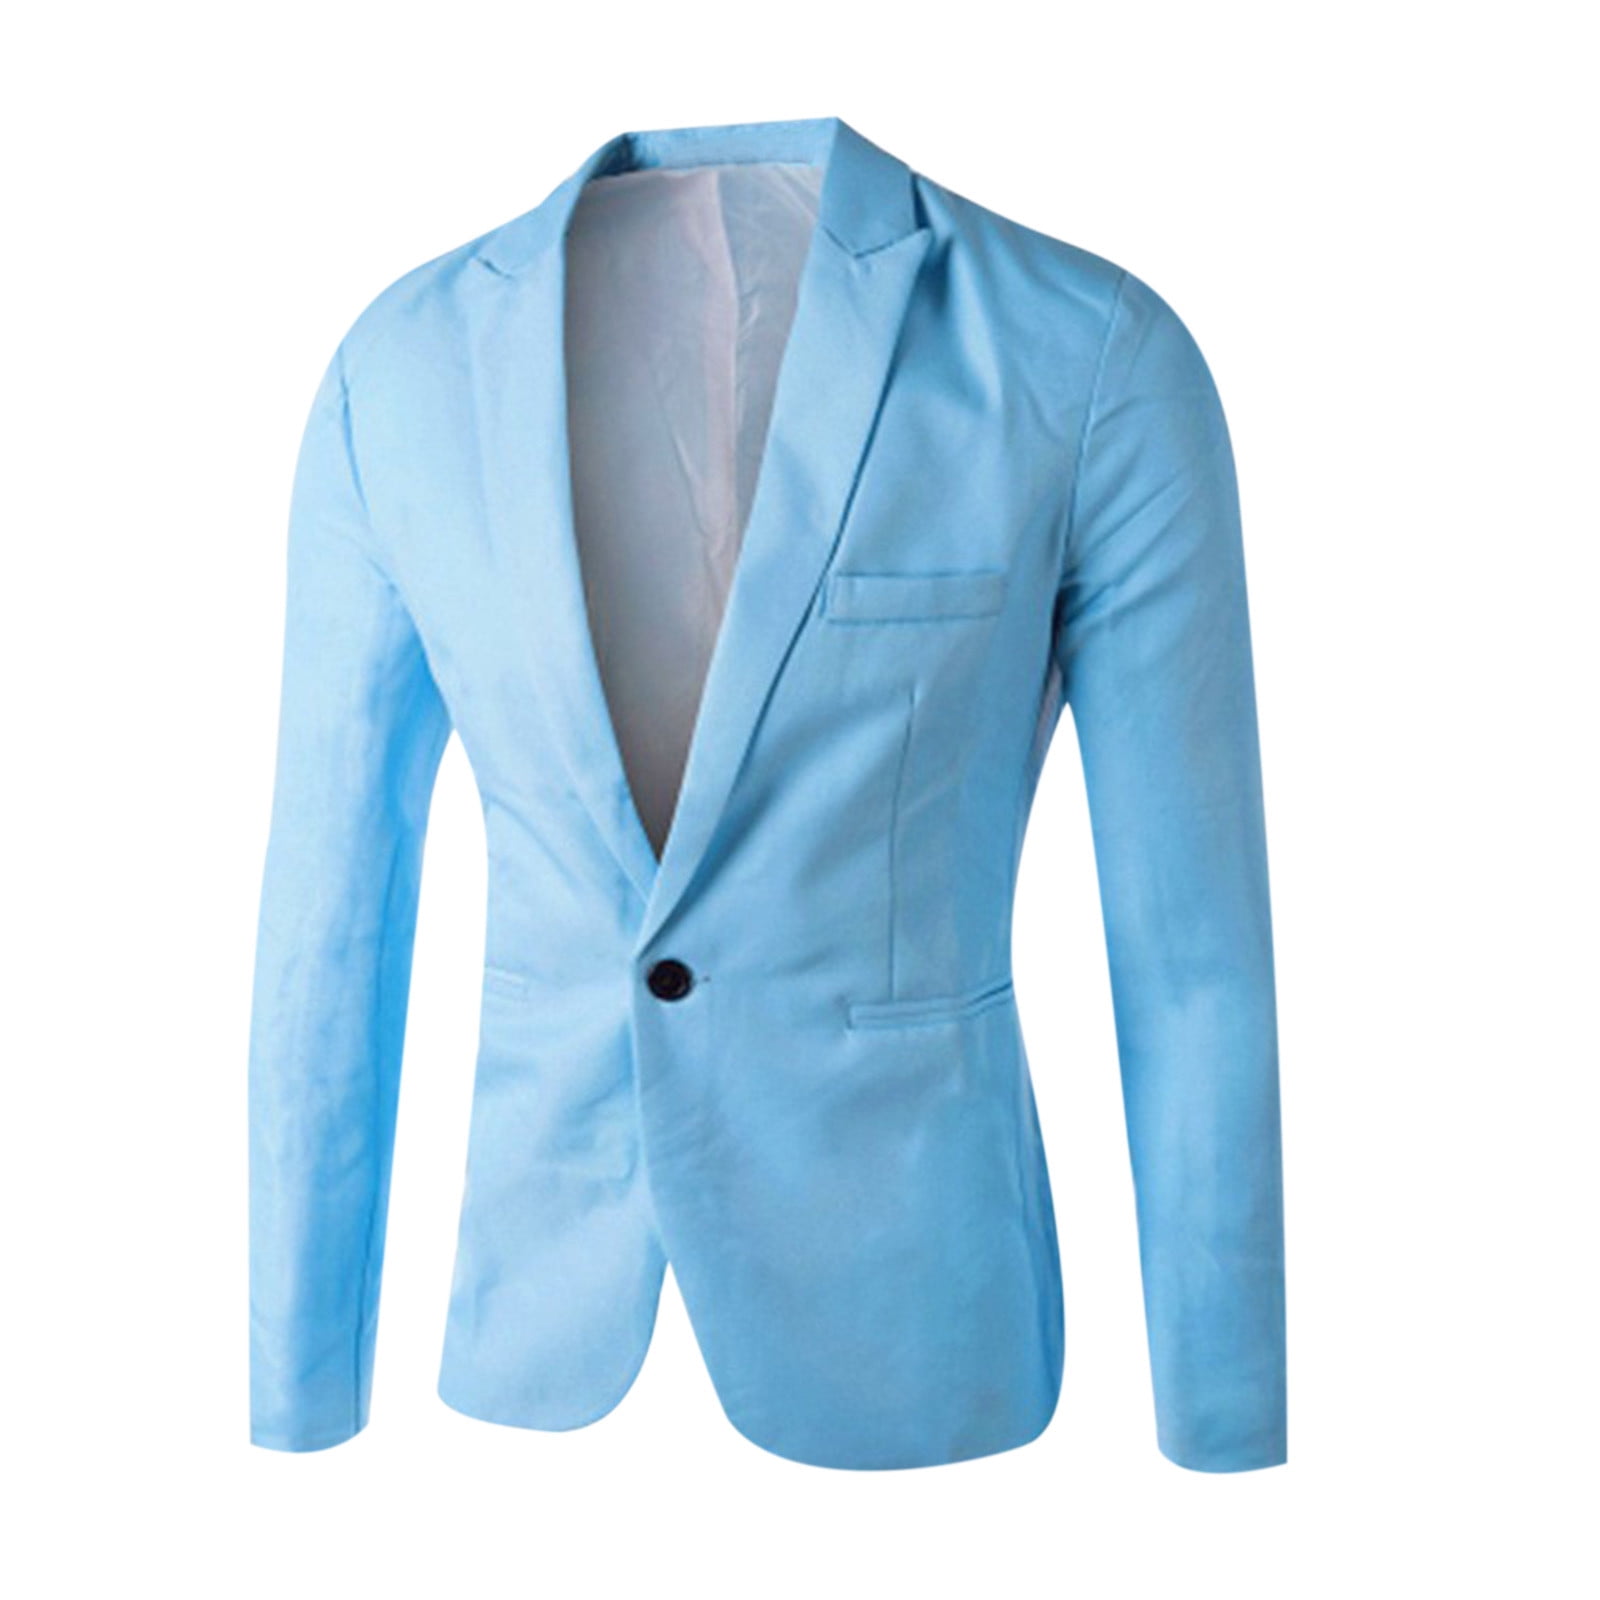 Cloudstyle Men's Casual Suit Jacket Slim Fit Lightweight Blazer Coat Light Blue, L